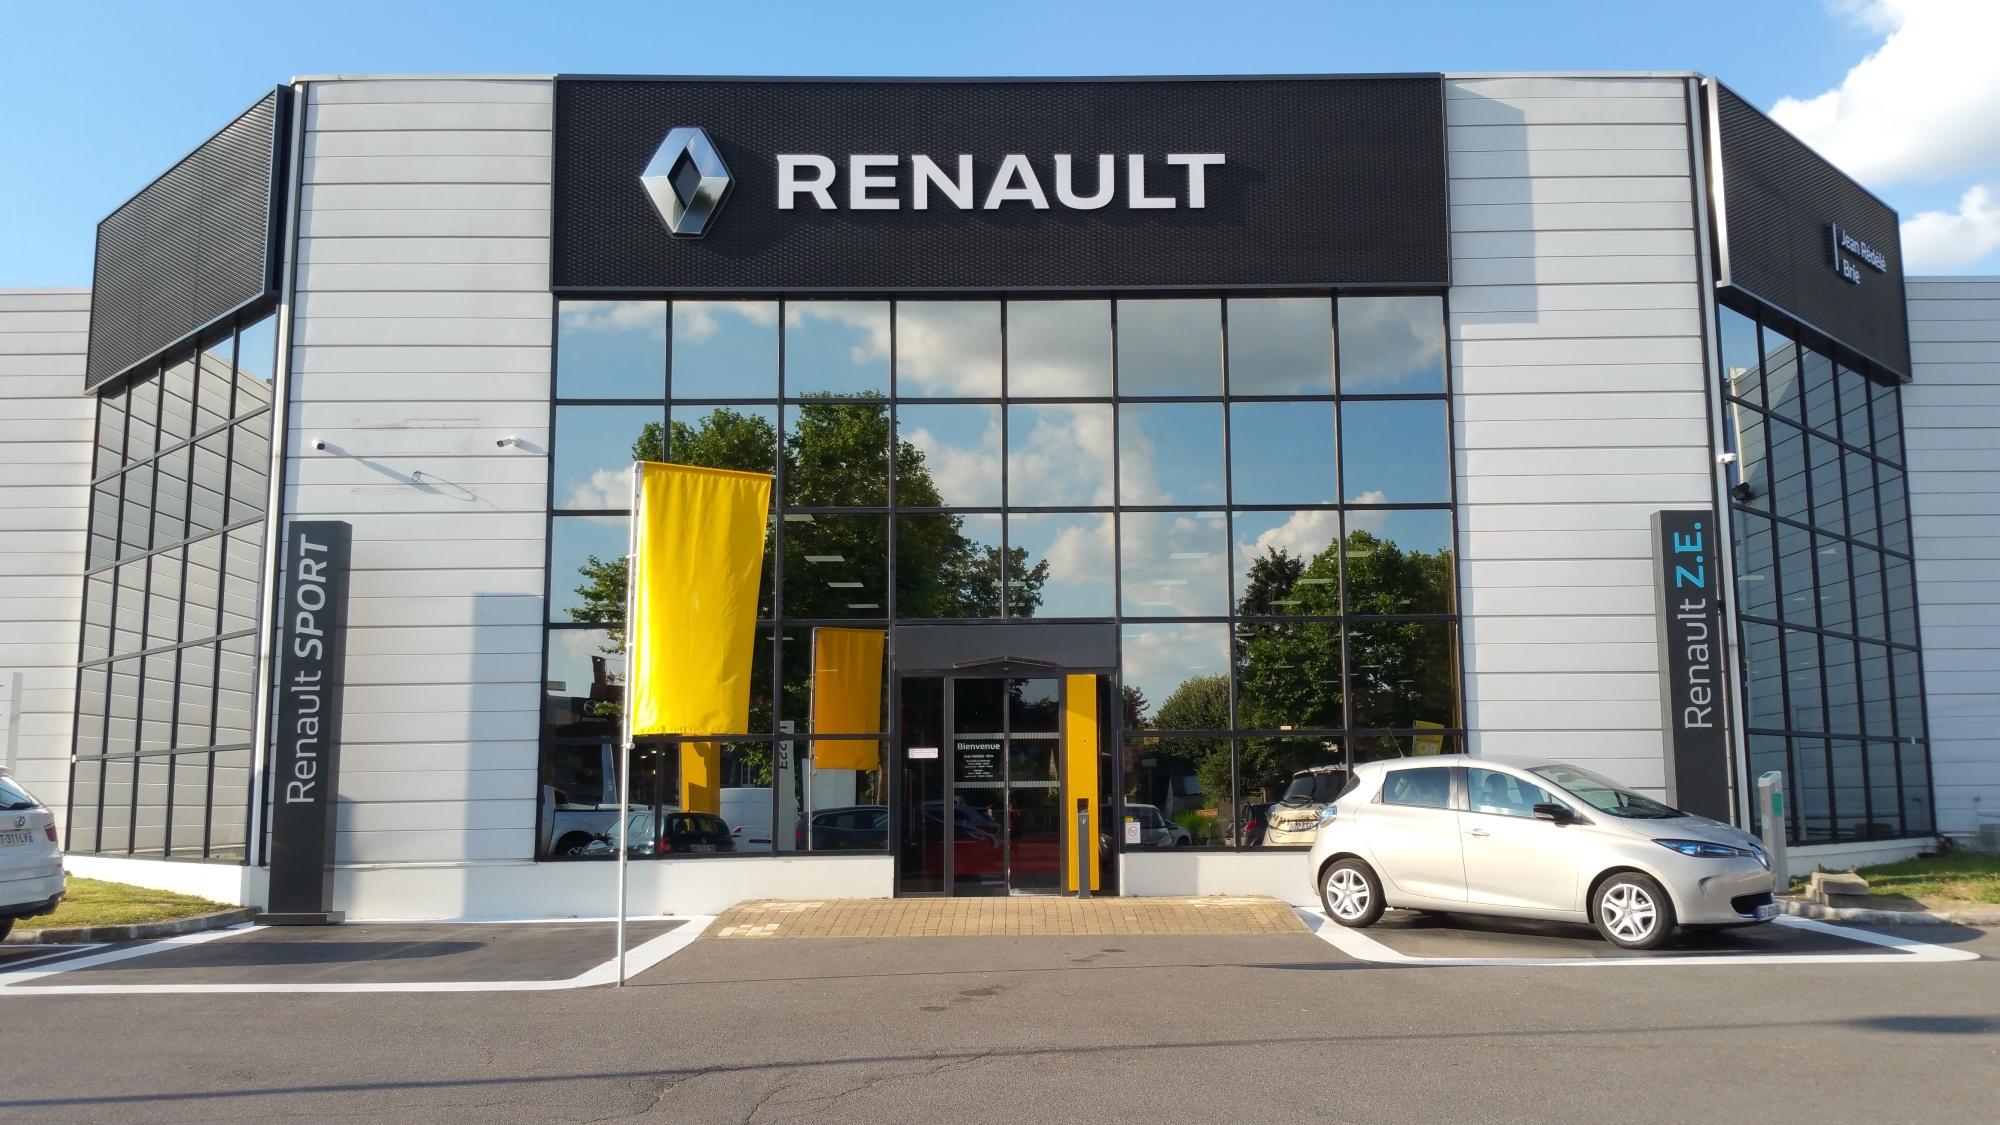 Renault Brie Comte Robert